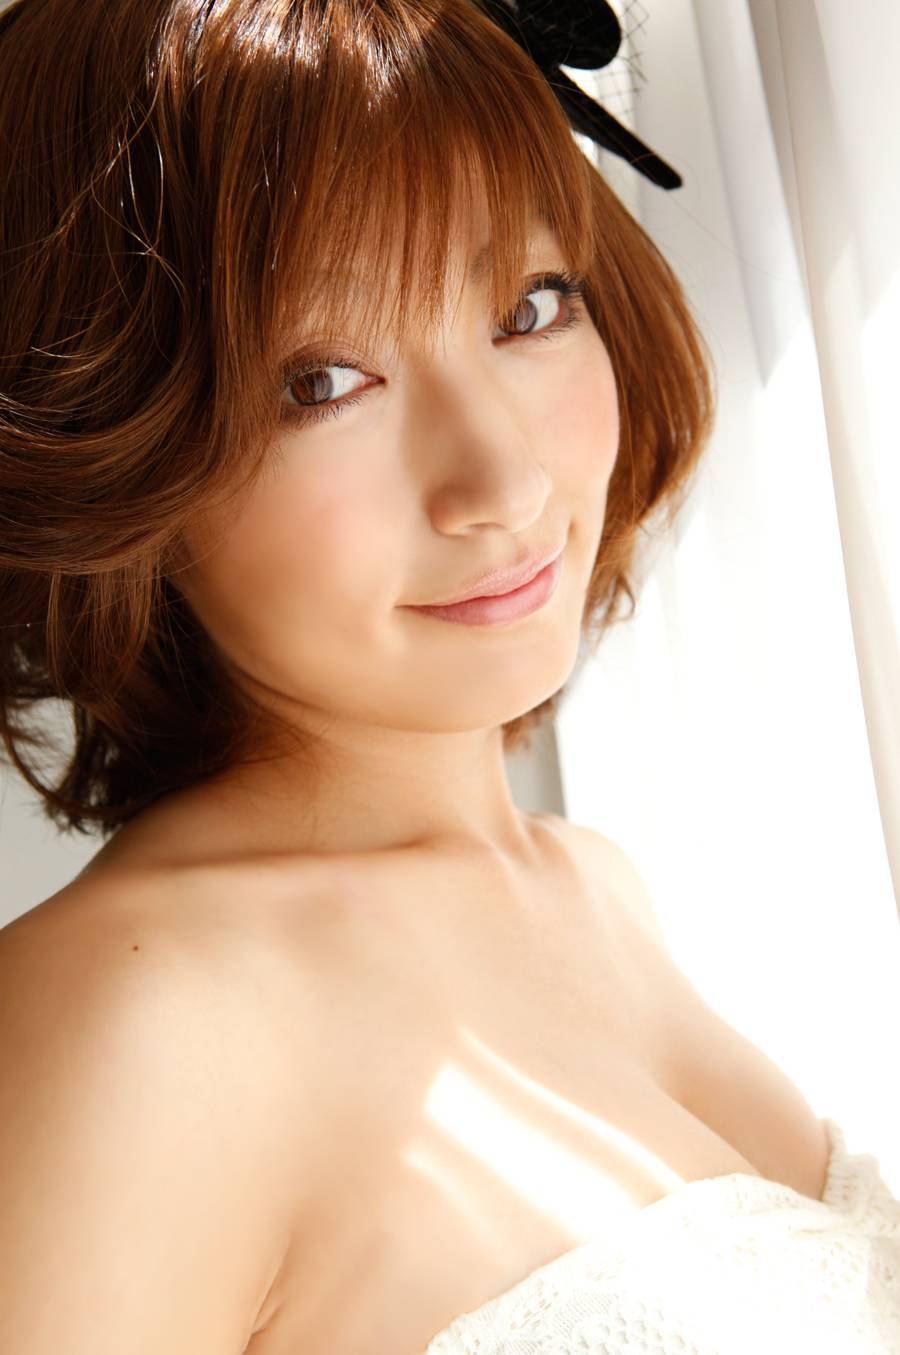 Yoko Kumada [Princess Collection] pictures of sexy Japanese beauties